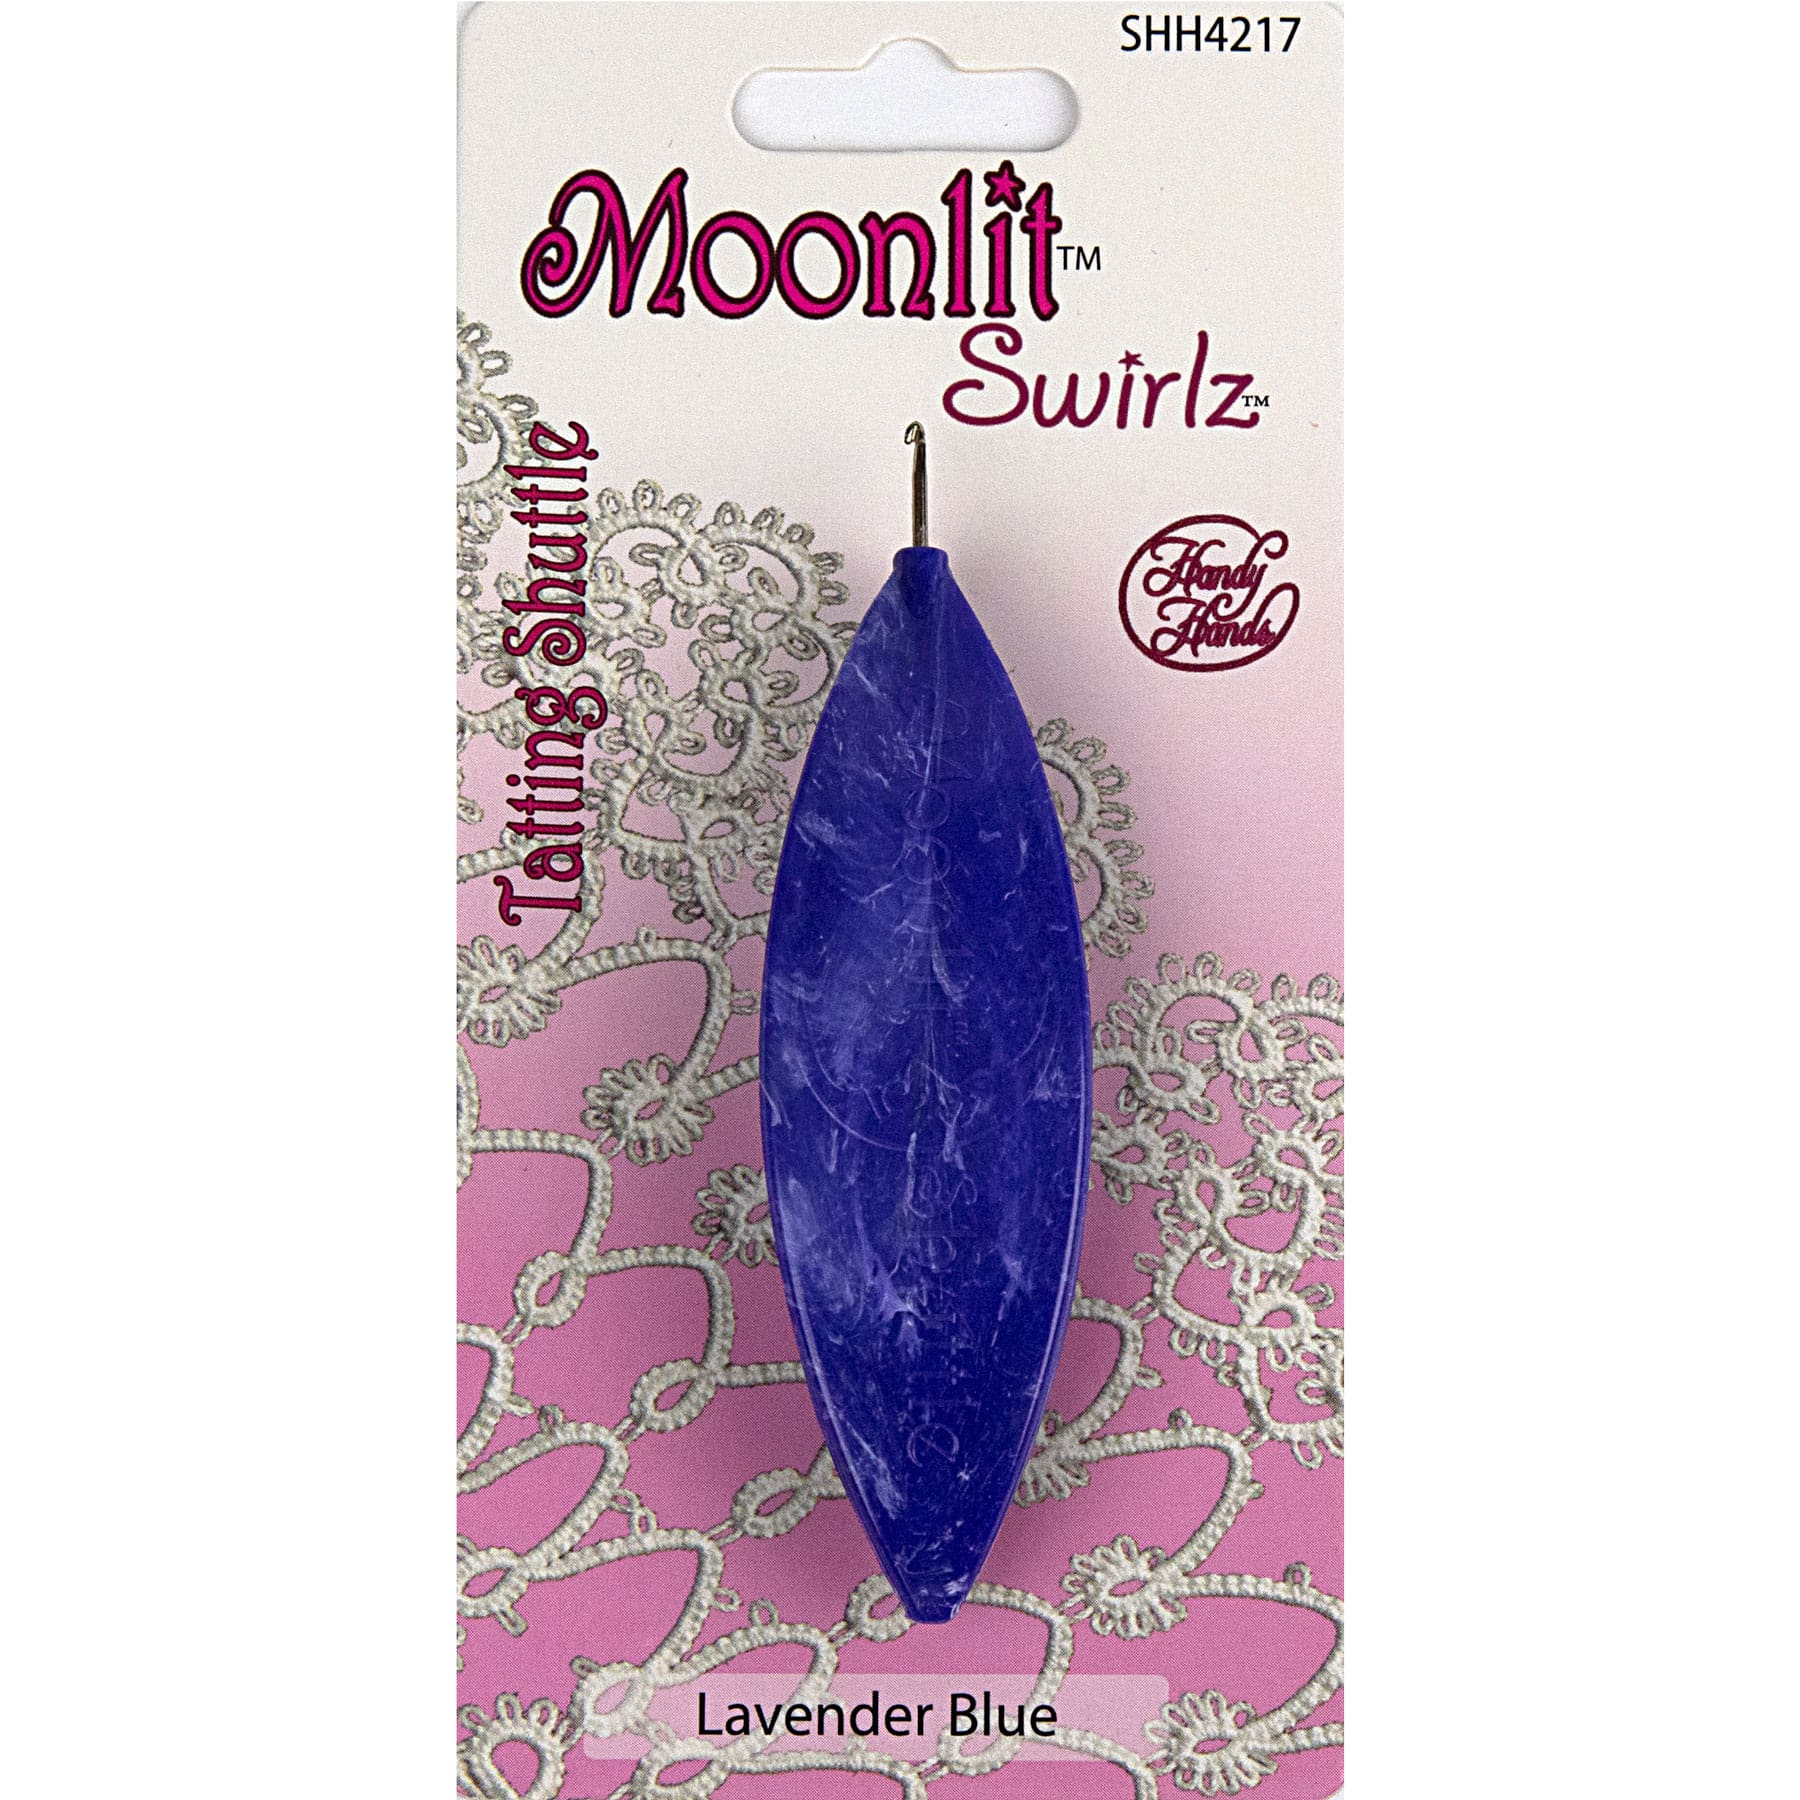 Handy Hands Moonlit Swirlz Tatting Shuttle in Lavender Blue